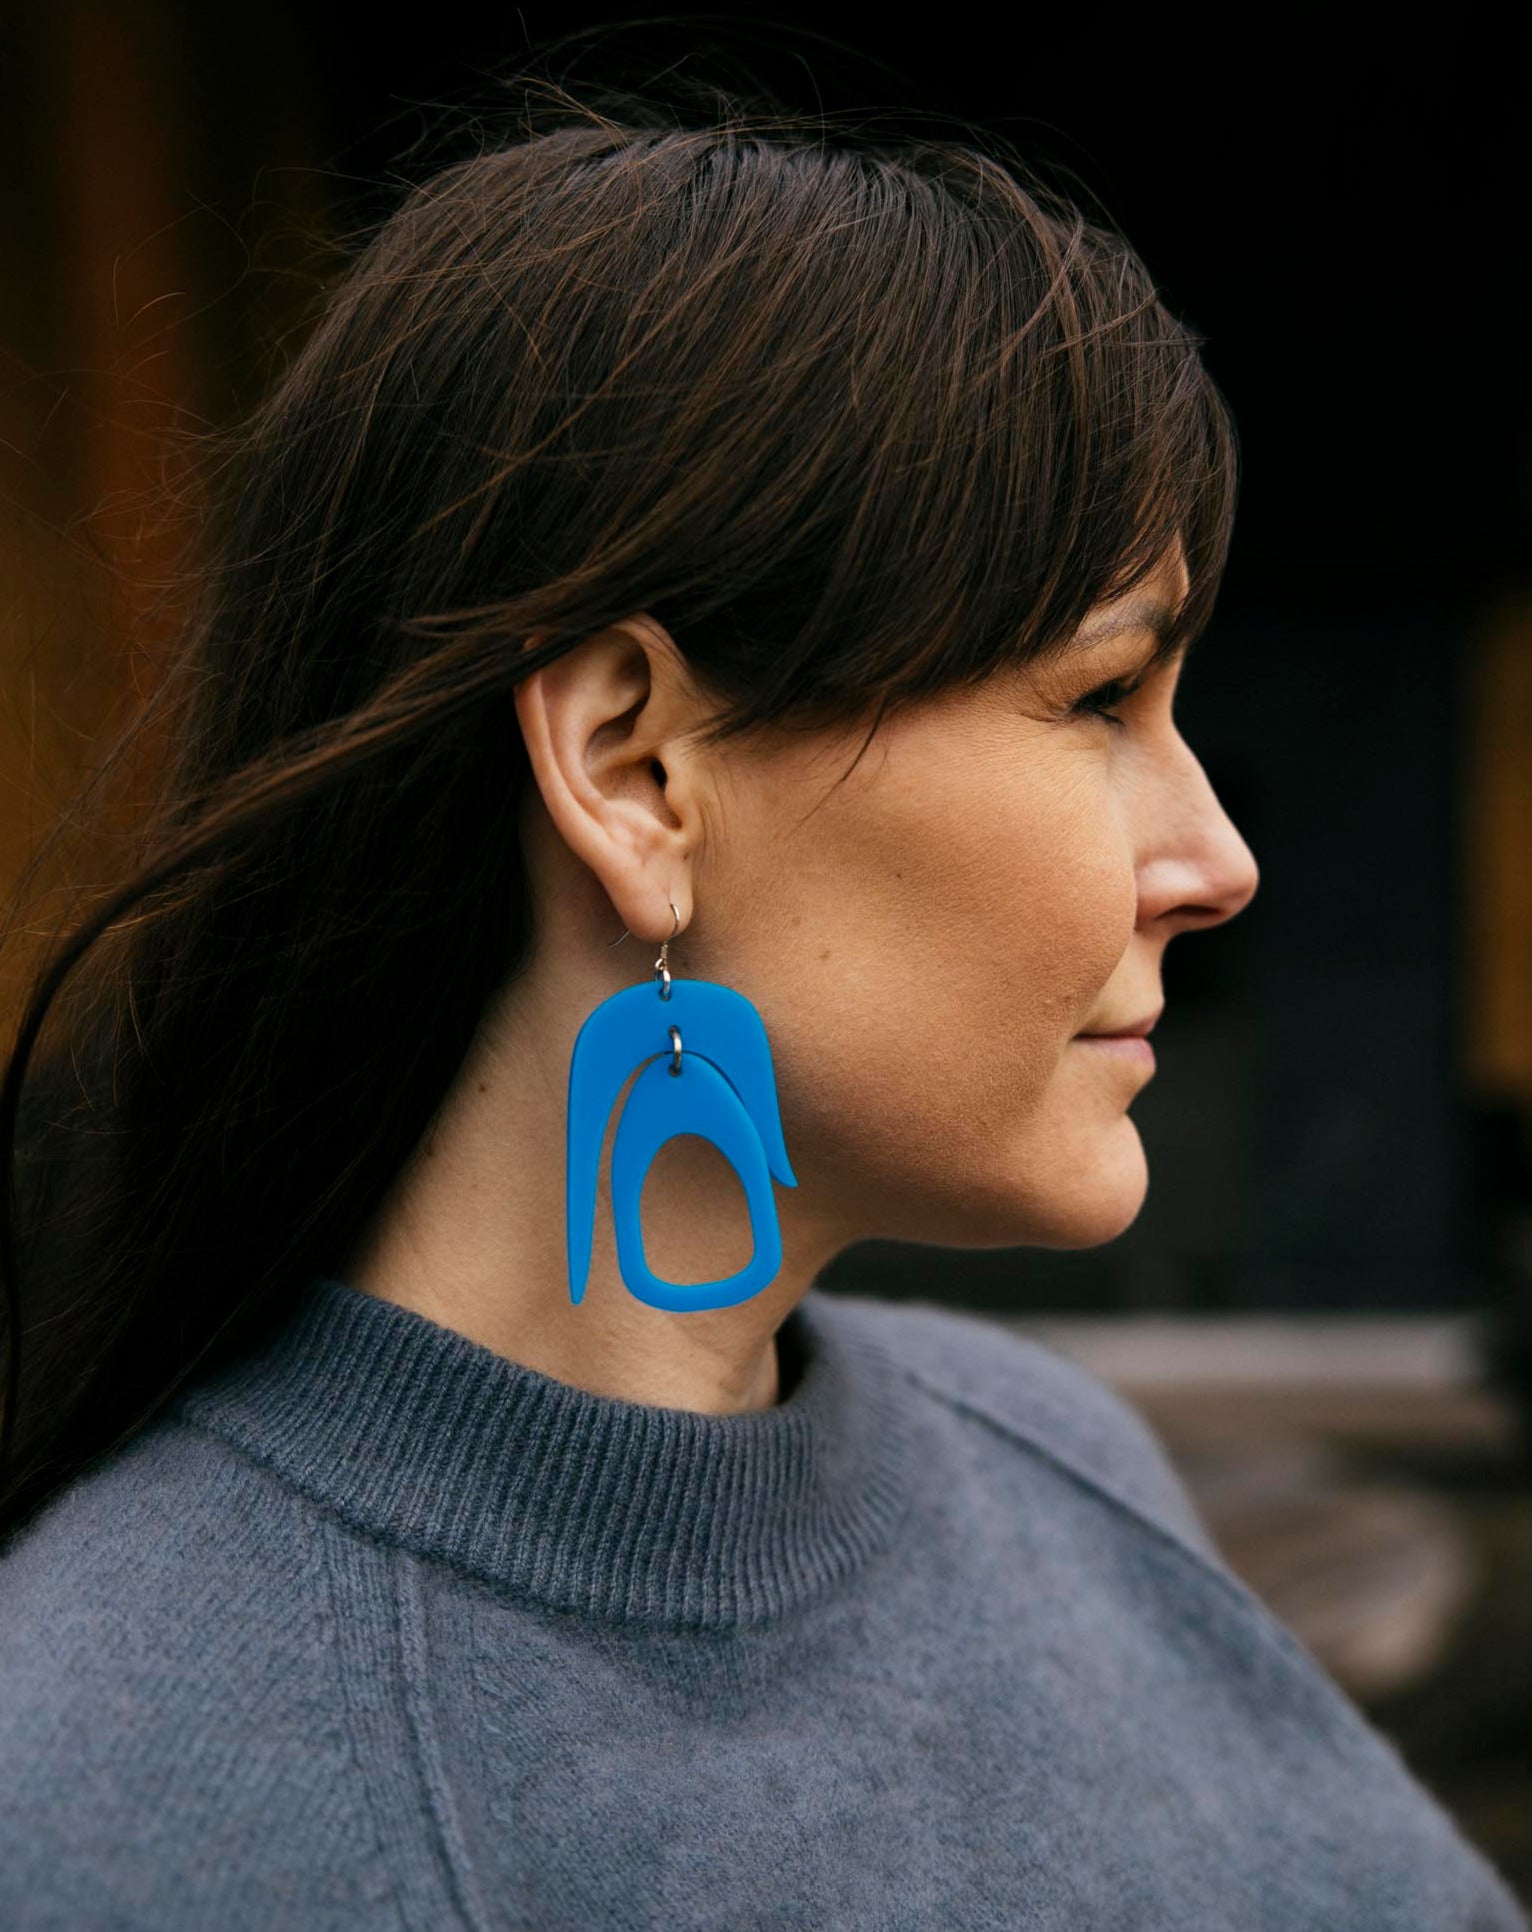 Salish Chandelier Earrings in Blue by warren steven scott on a brunette woman